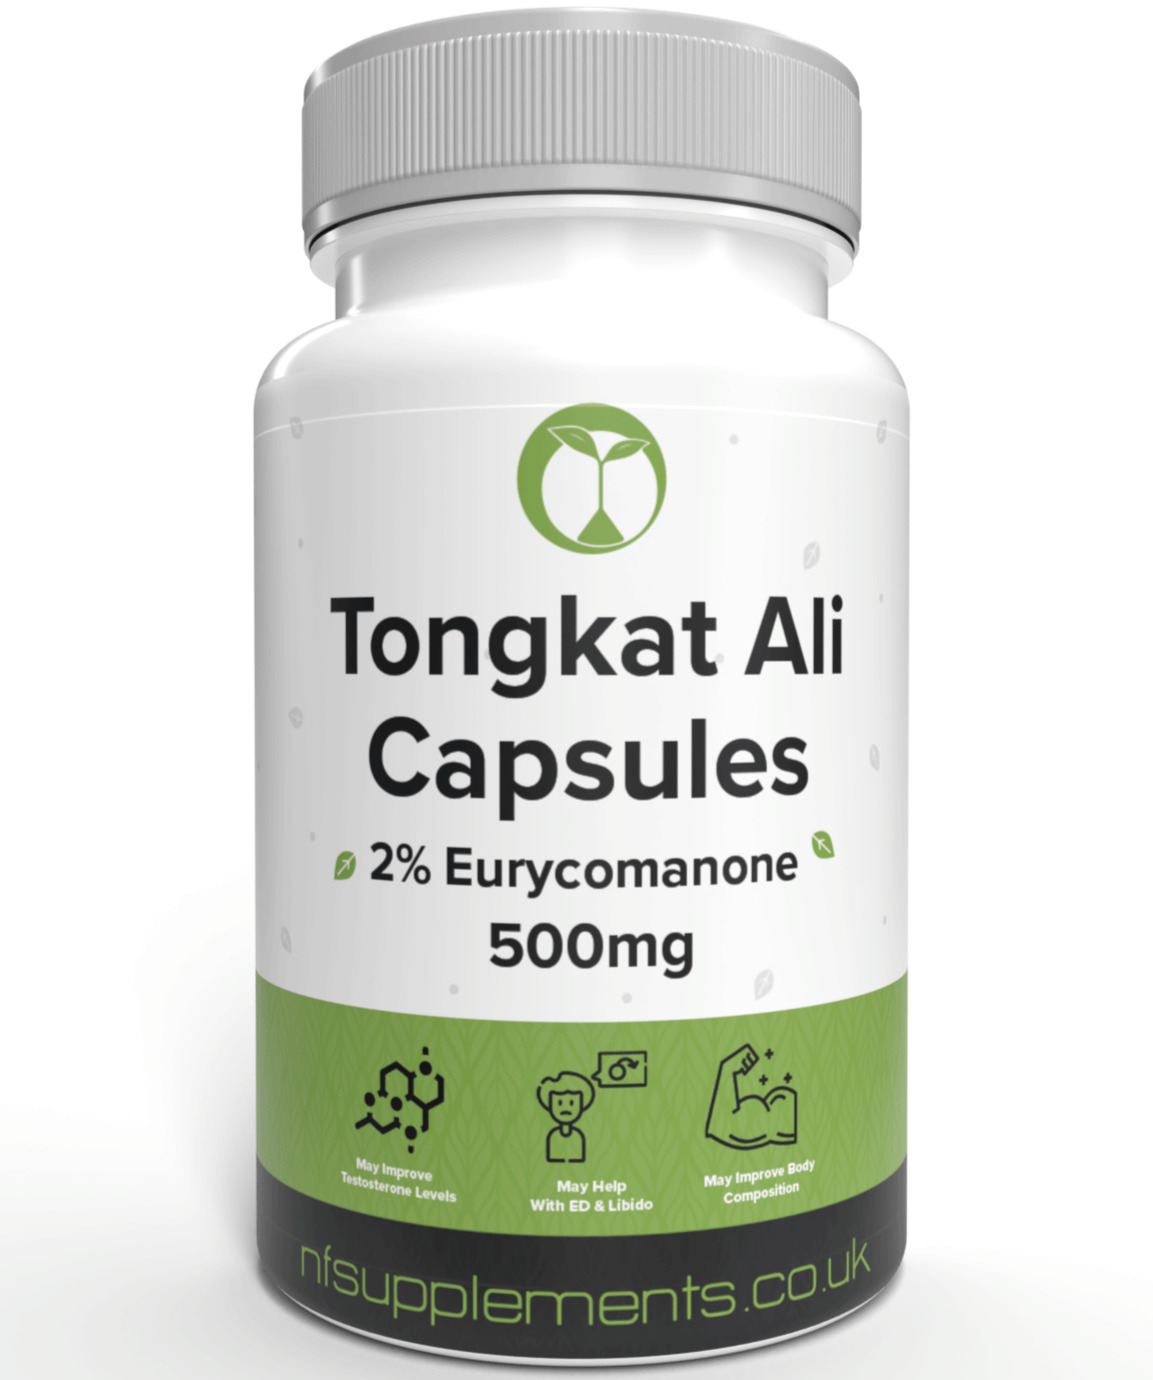 Tongkat Ali Capsules: Natural Test Booster for Men